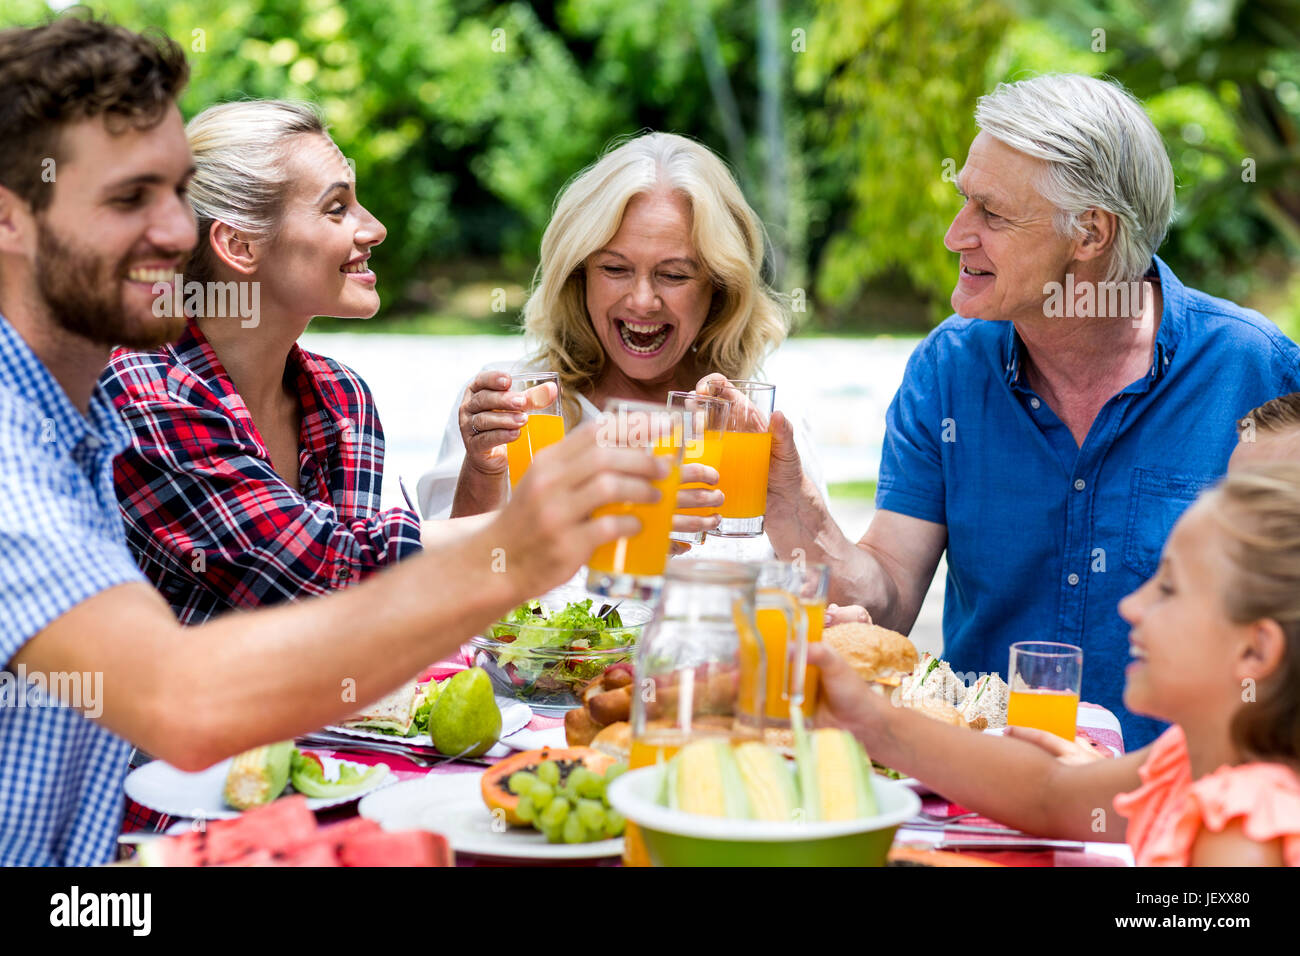 Lächelnd Familie toasten Saft am Tisch Stockfoto